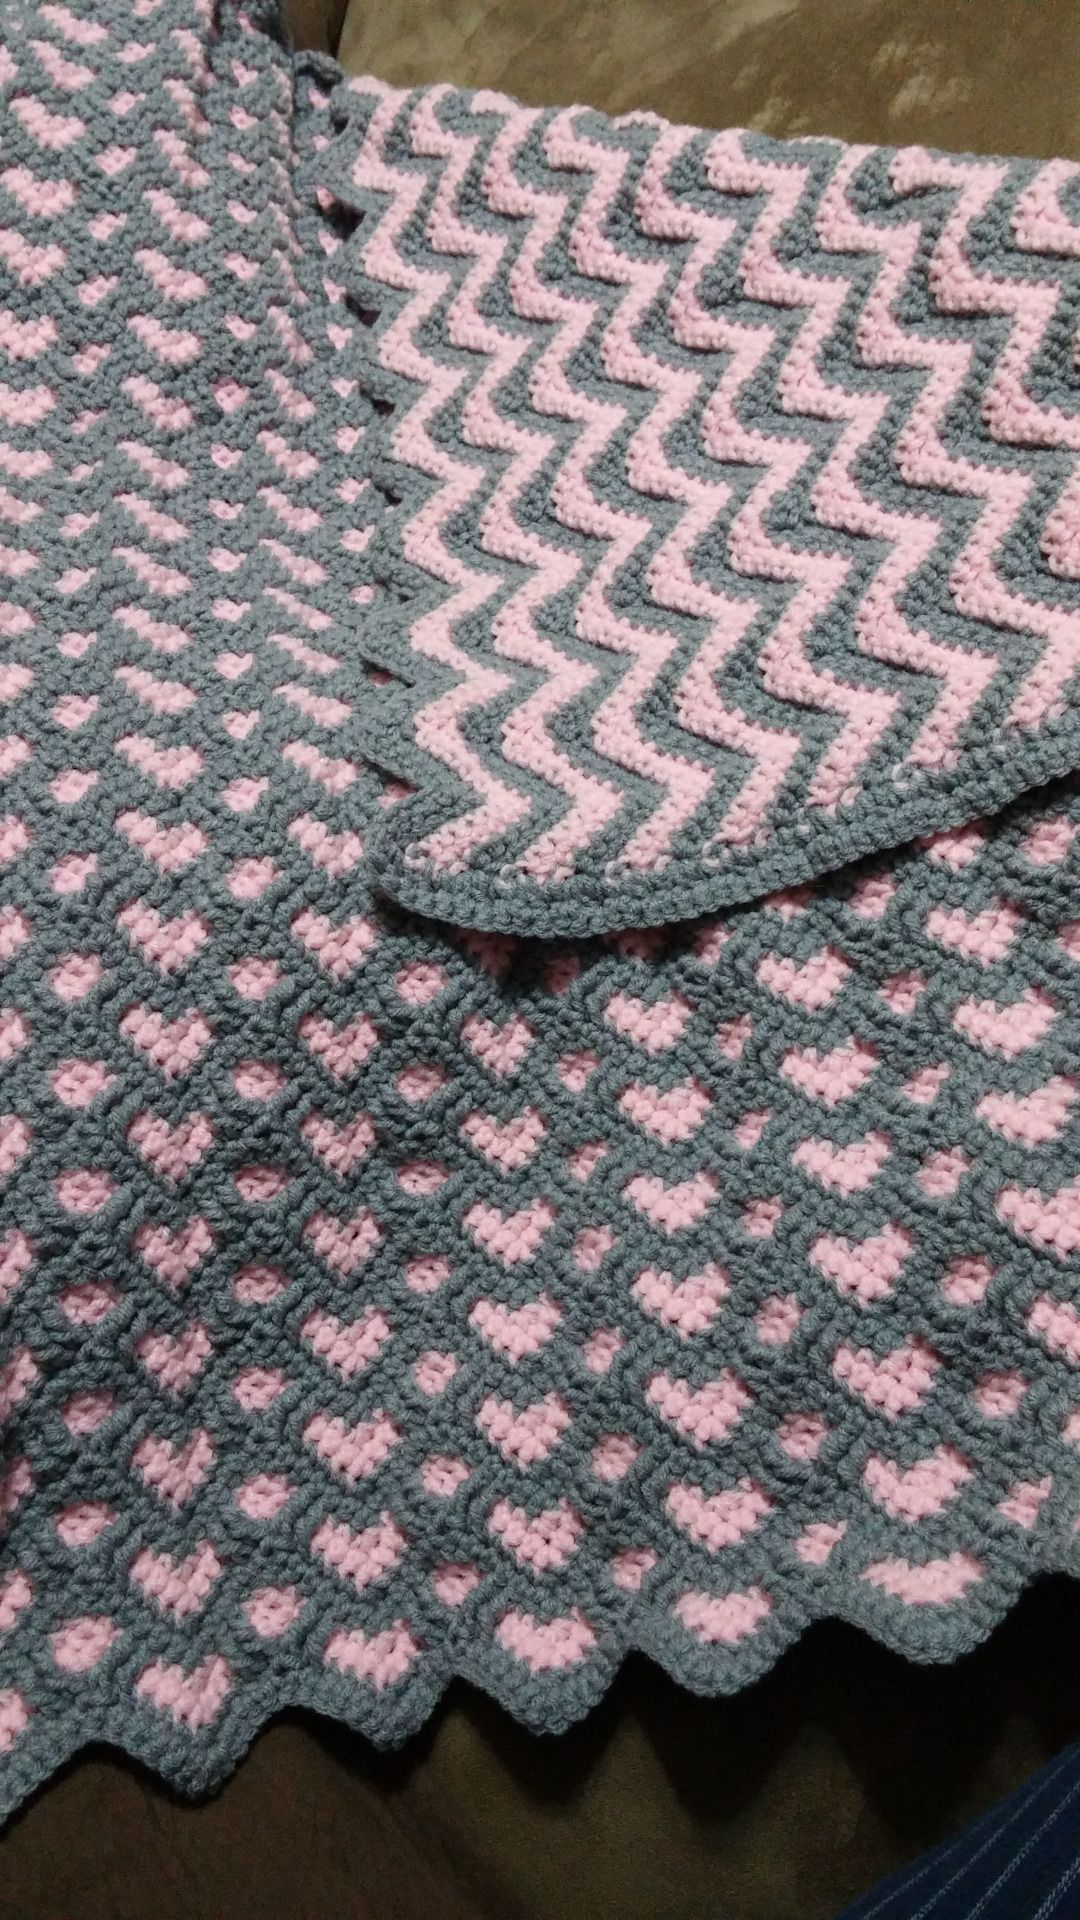 Baby Crochet Blanket Patterns Pin Joanne Barrier On Stuff To Try Crochet Crochet Patterns